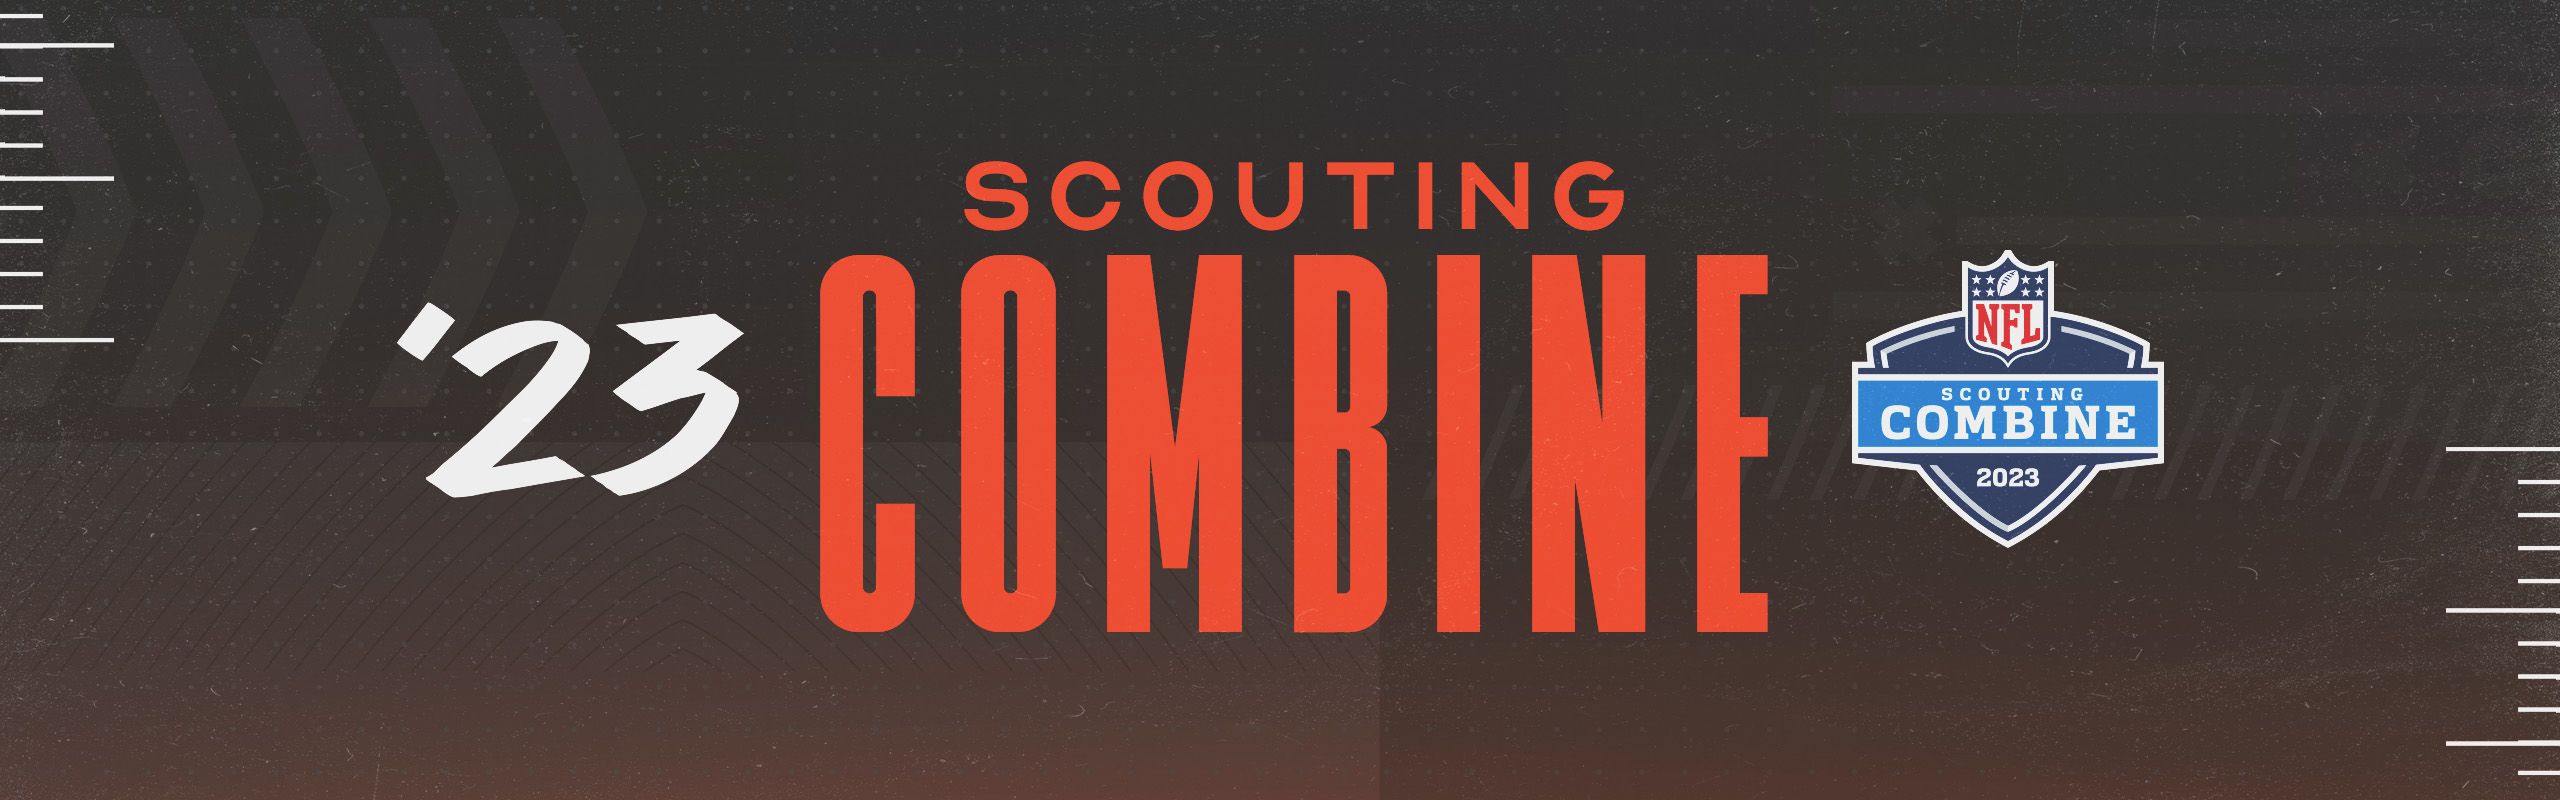 NFL Scouting Combine  Cincinnati Bengals 